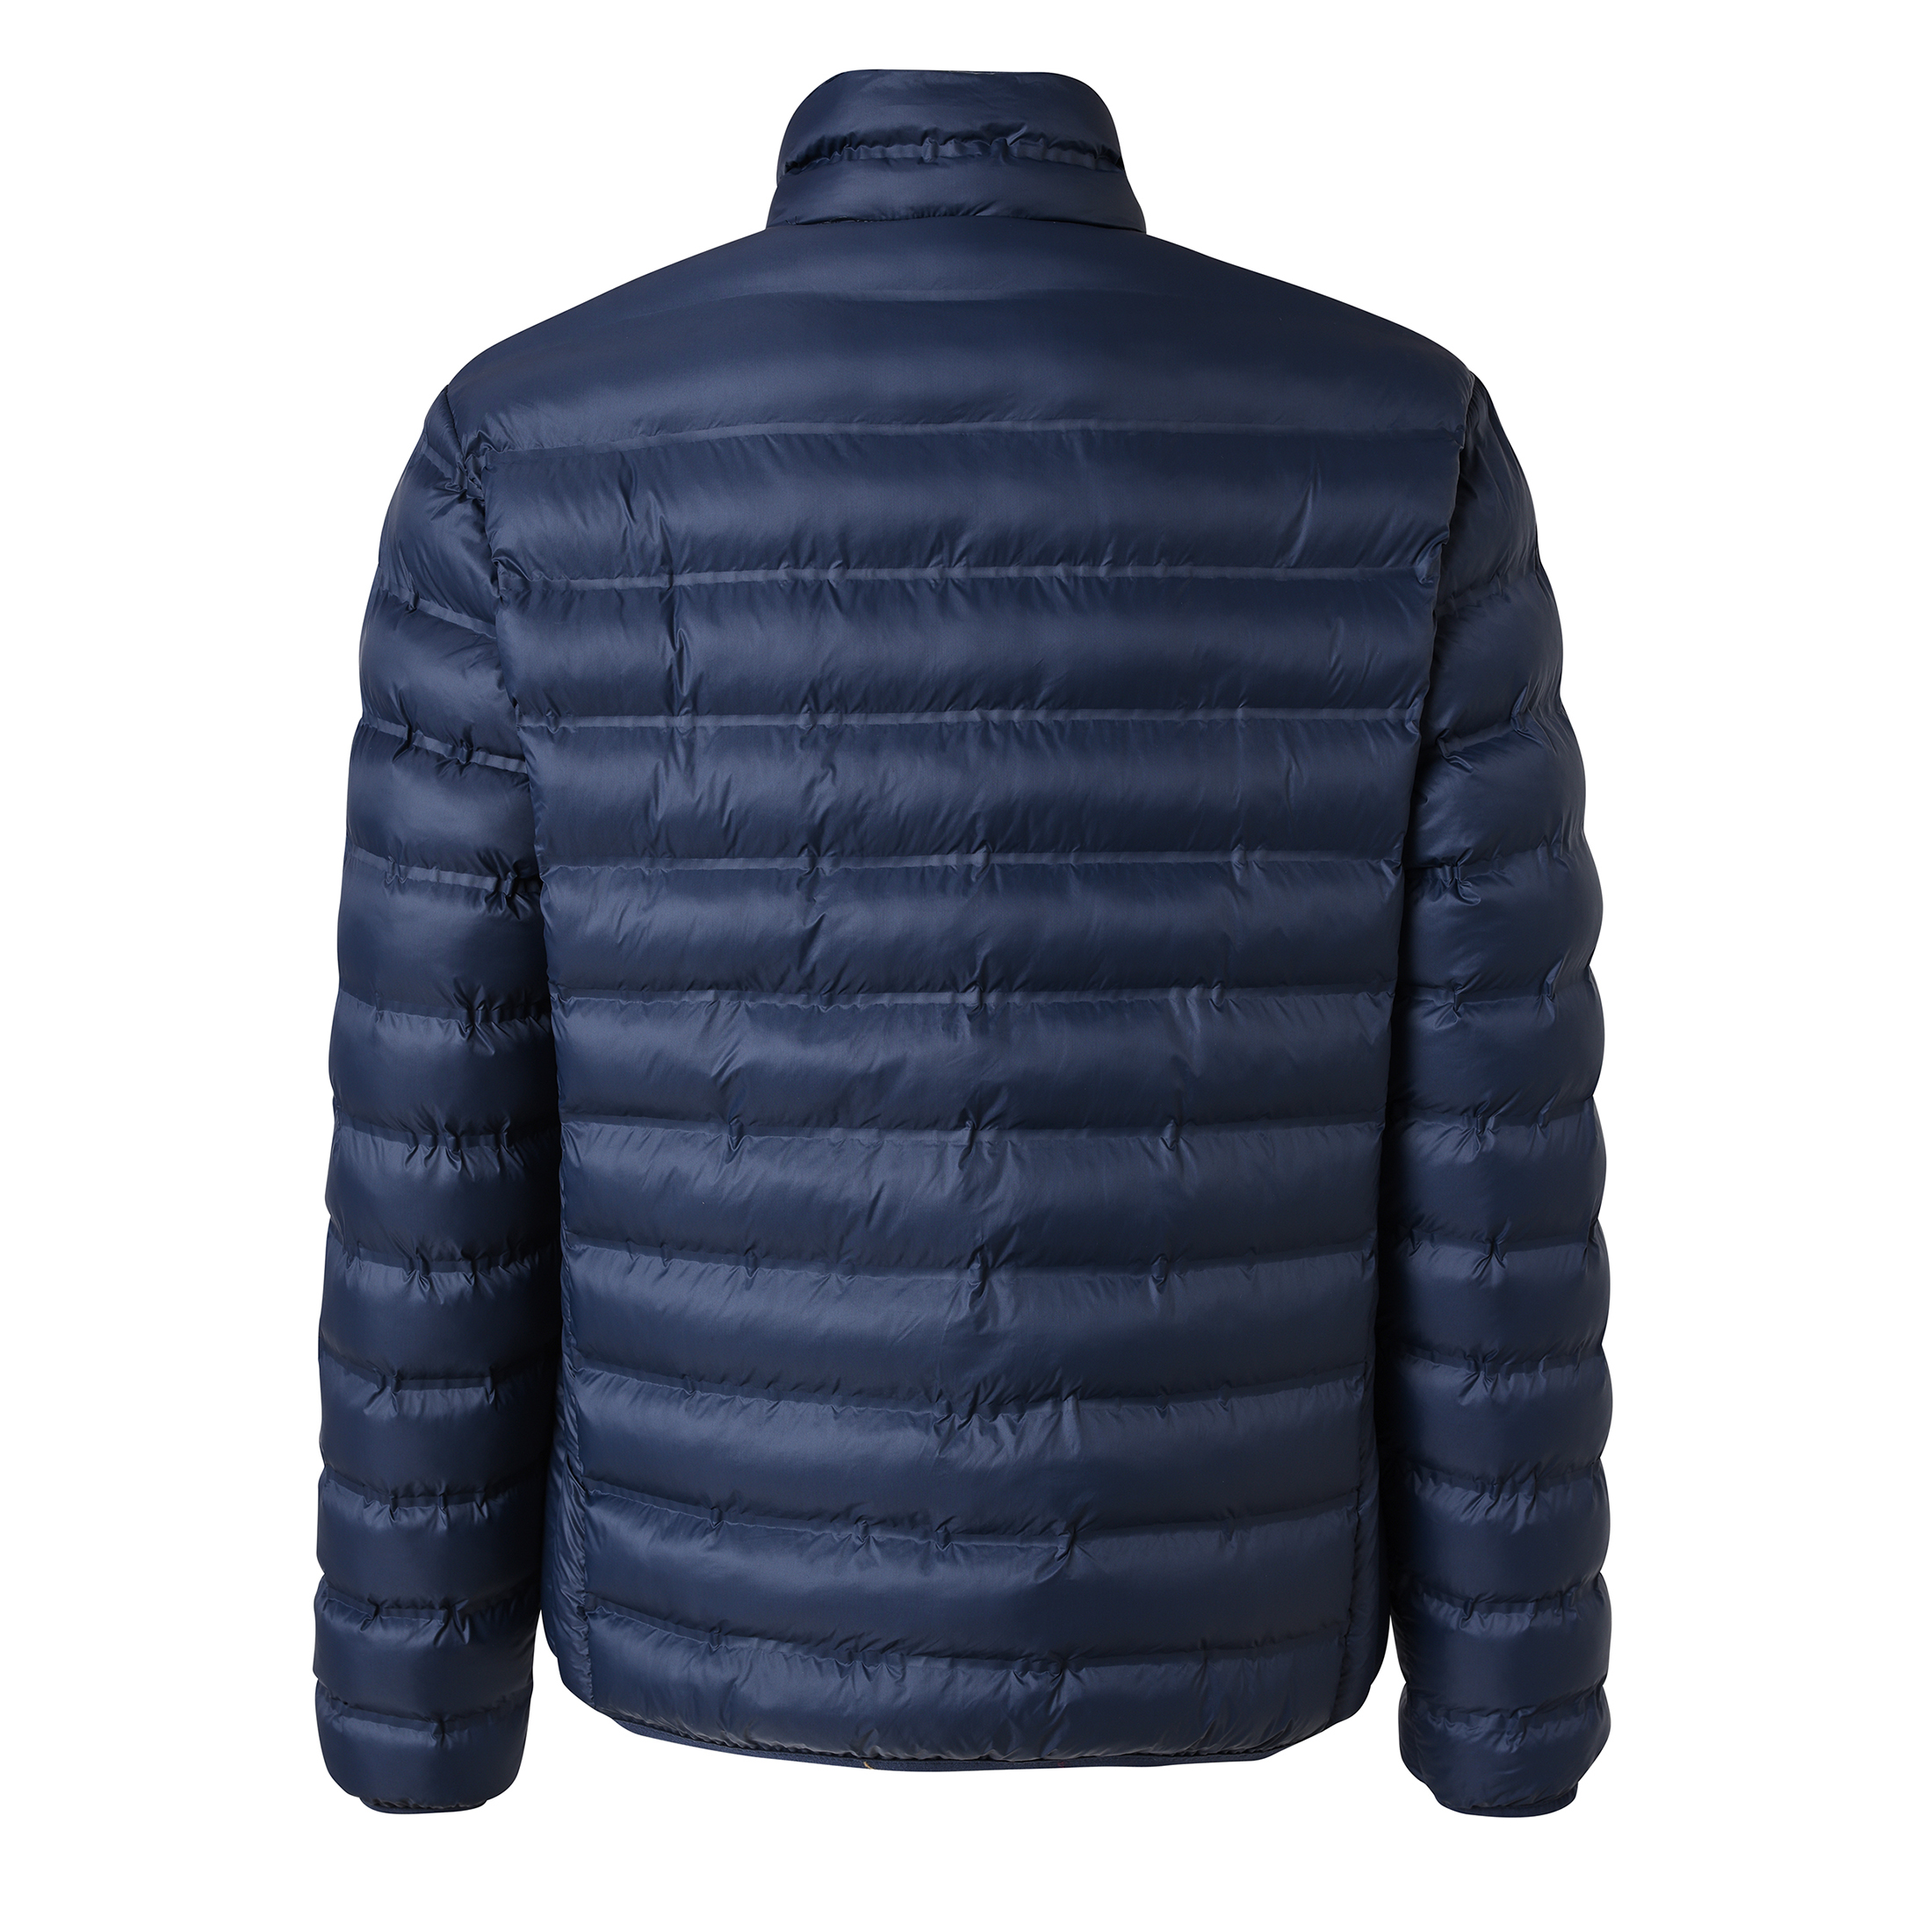 Hot Sale Men's Light Warm Padding Jacket with Nylon Fabric New Design Style Jacket